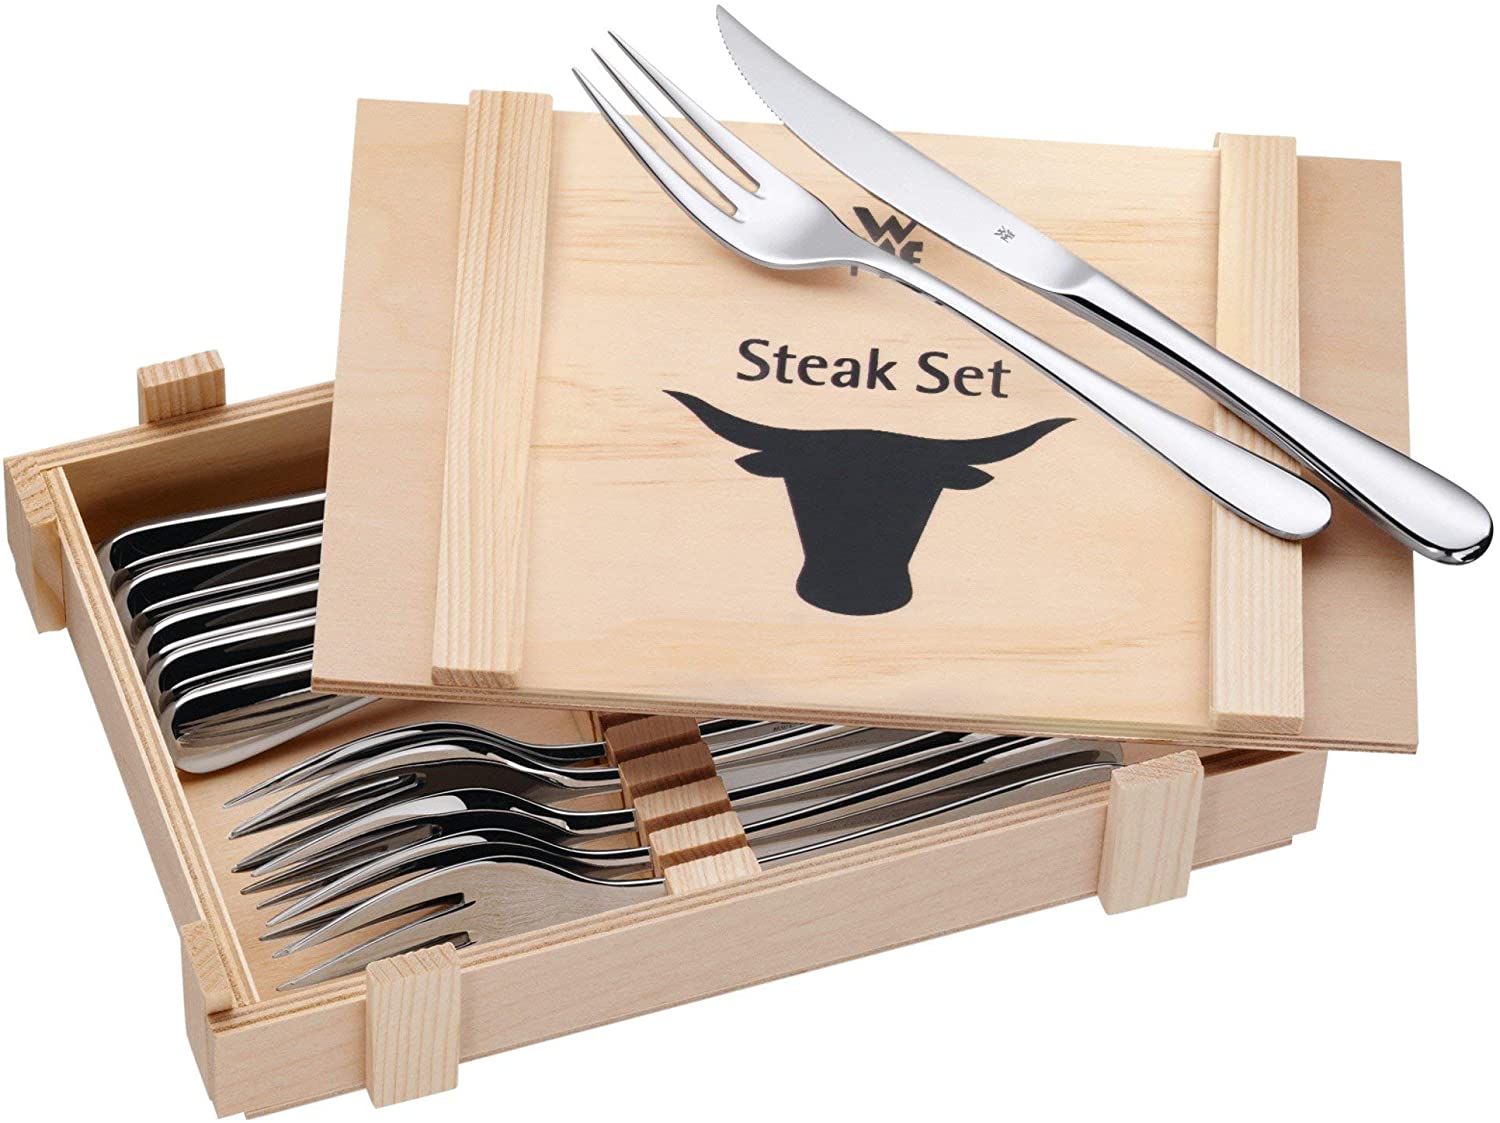 WMF 12-piece steak cutlery set in wooden case, normal